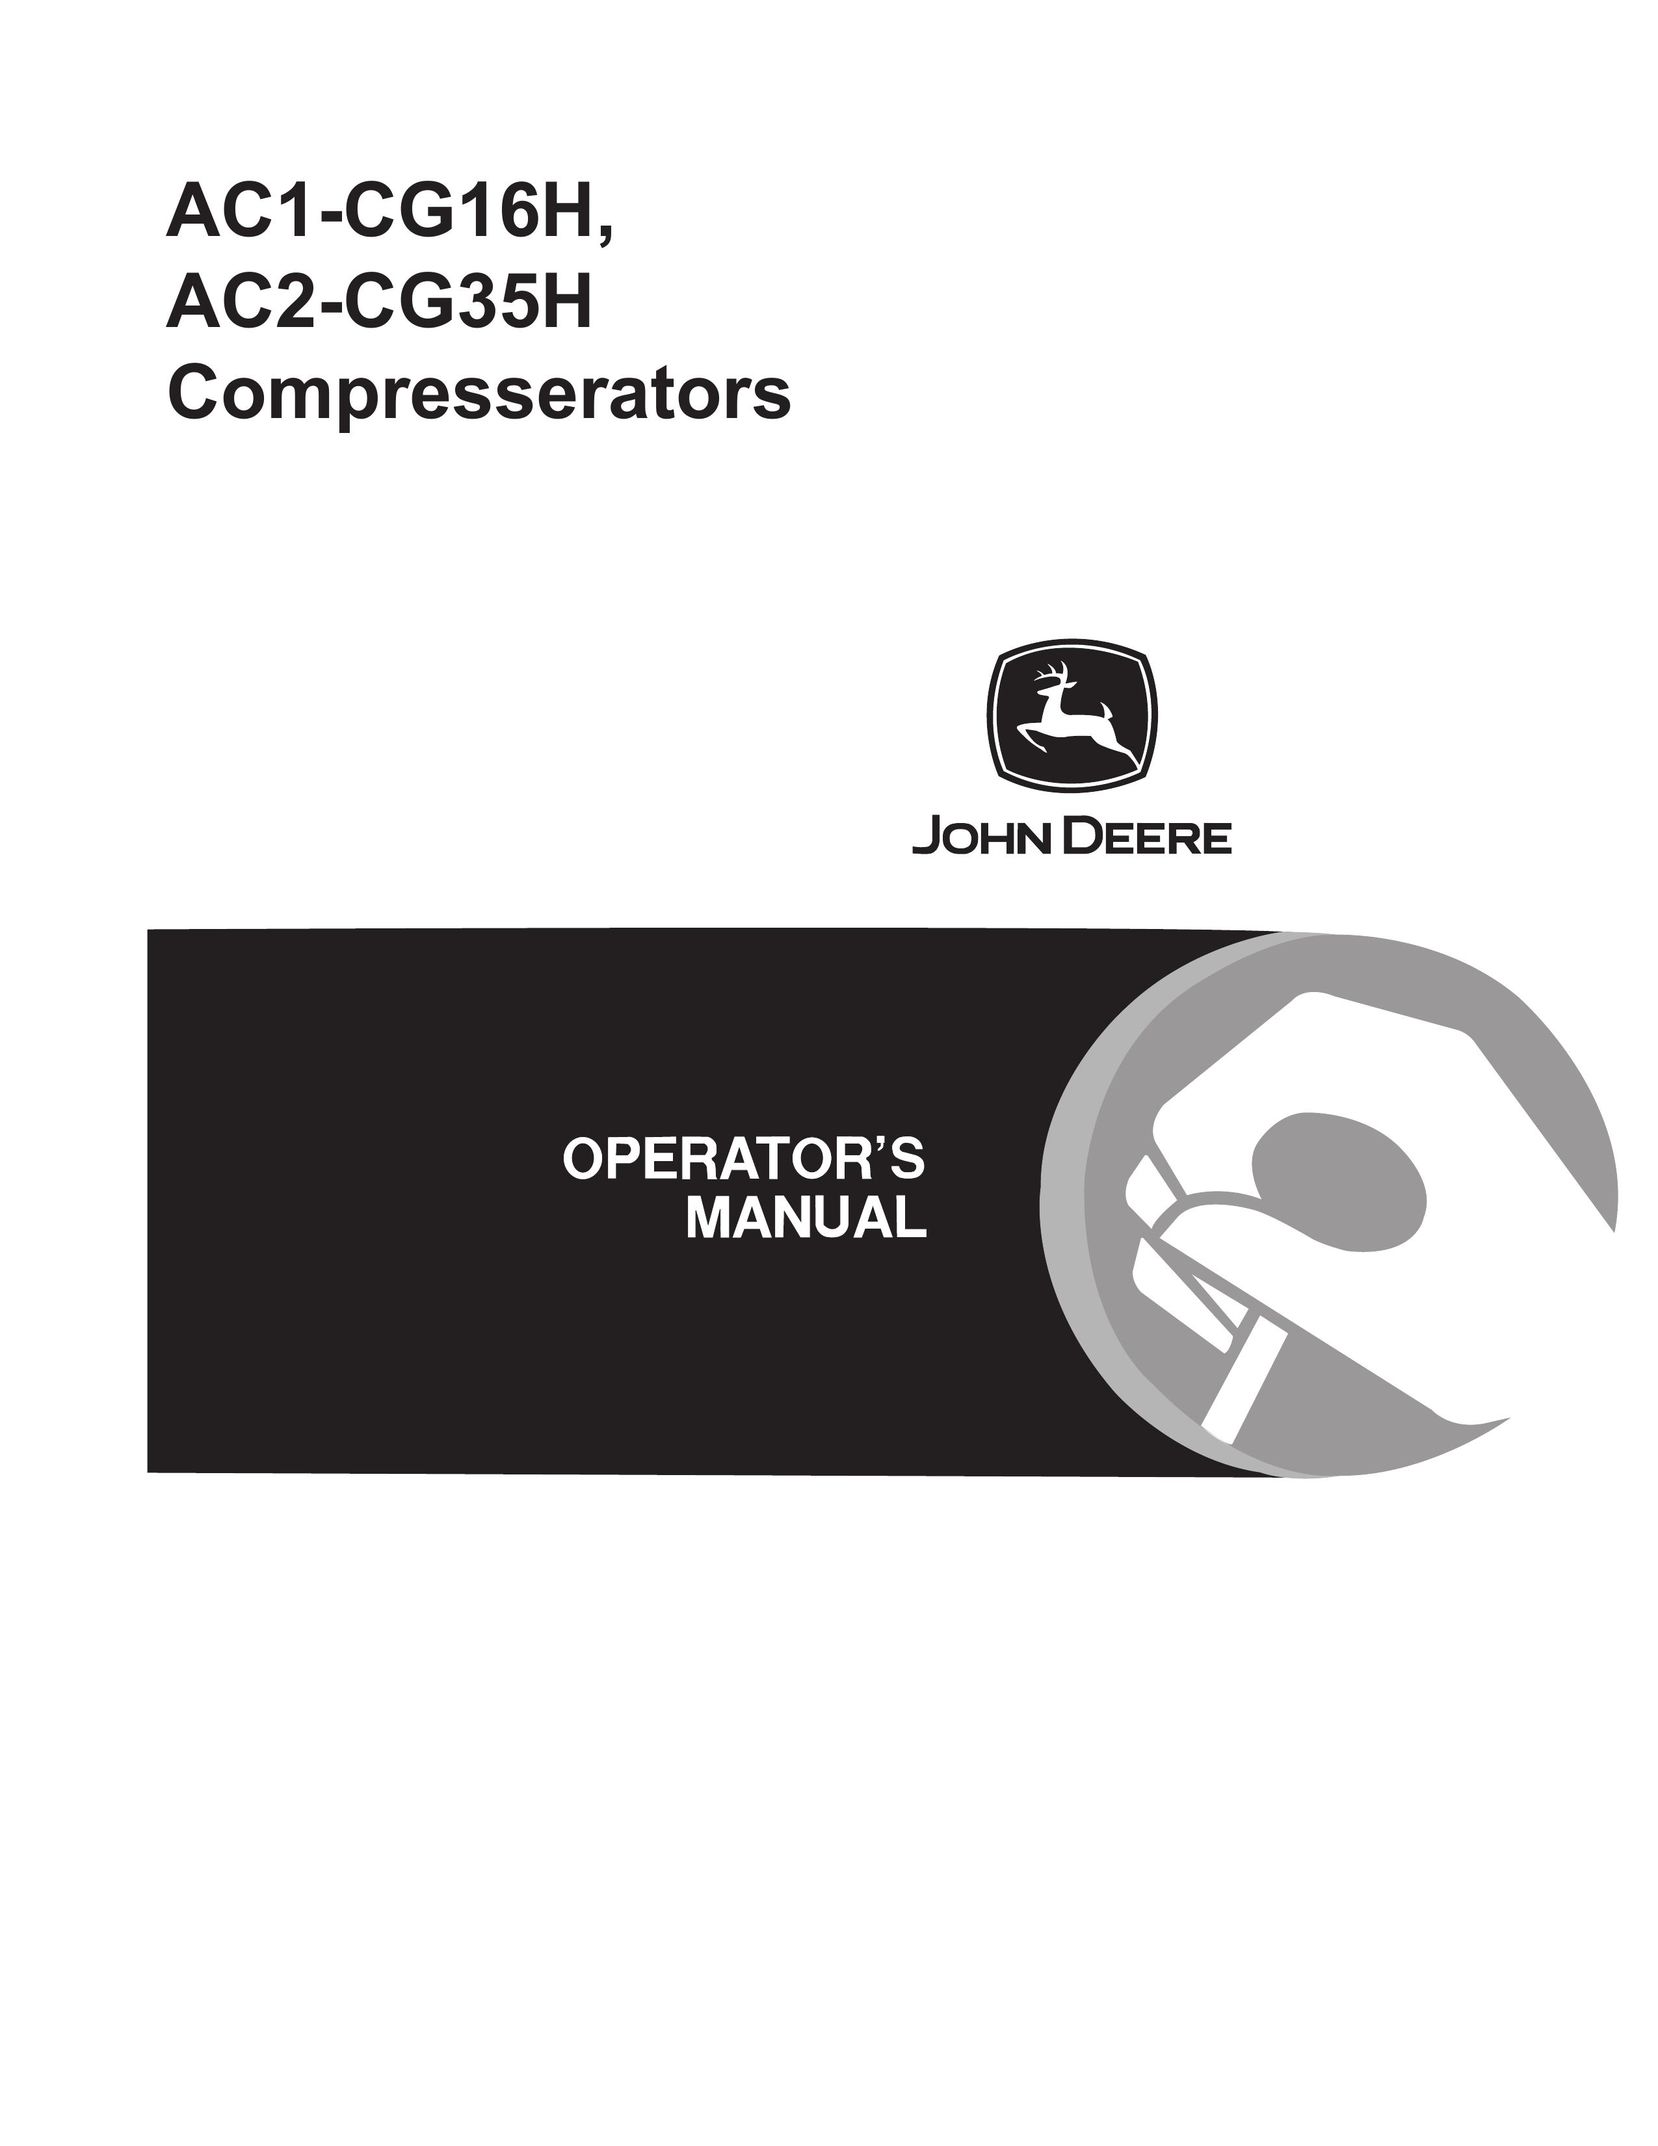 John Deere AC2-CG35H Air Compressor User Manual